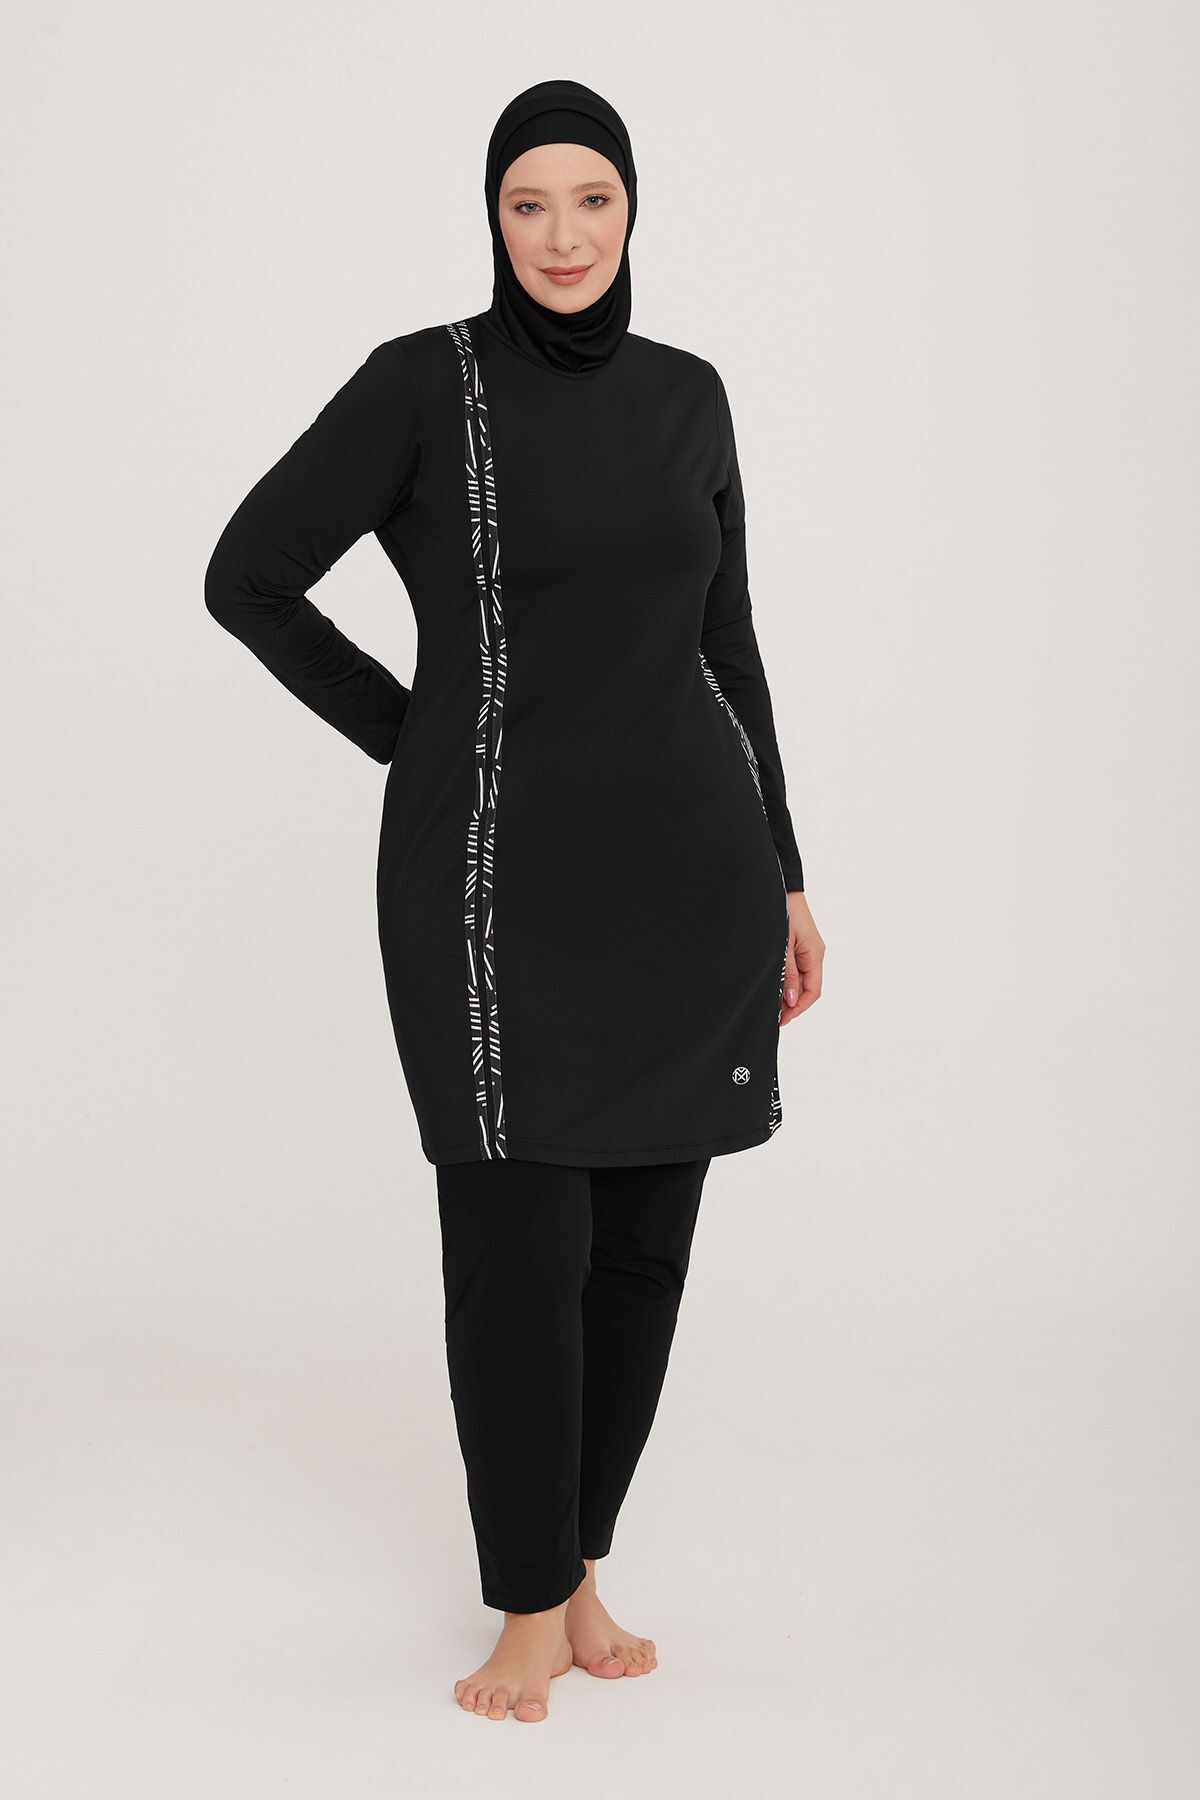 Remsa Mayo Großer Vollständig Bedeckter Hijab-badeanzug Aus Lycra Nang 3 8108 Schwarzer Remsa-badeanzug für Damen - 3XL